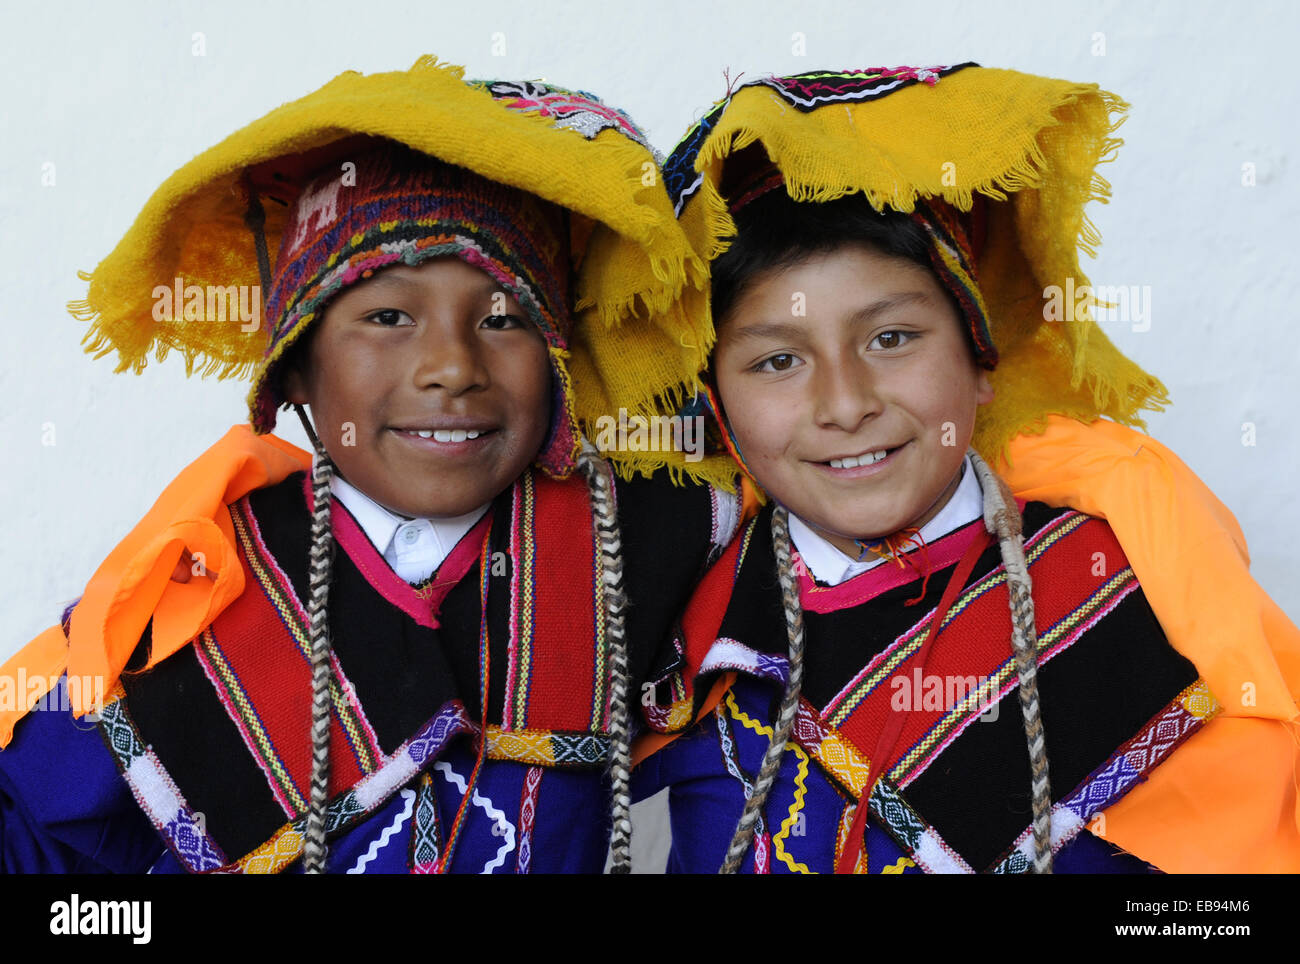 Dos niños peruanos con vestimentas tradicionales en Cuzco, Perú, América del Sur. Foto de stock